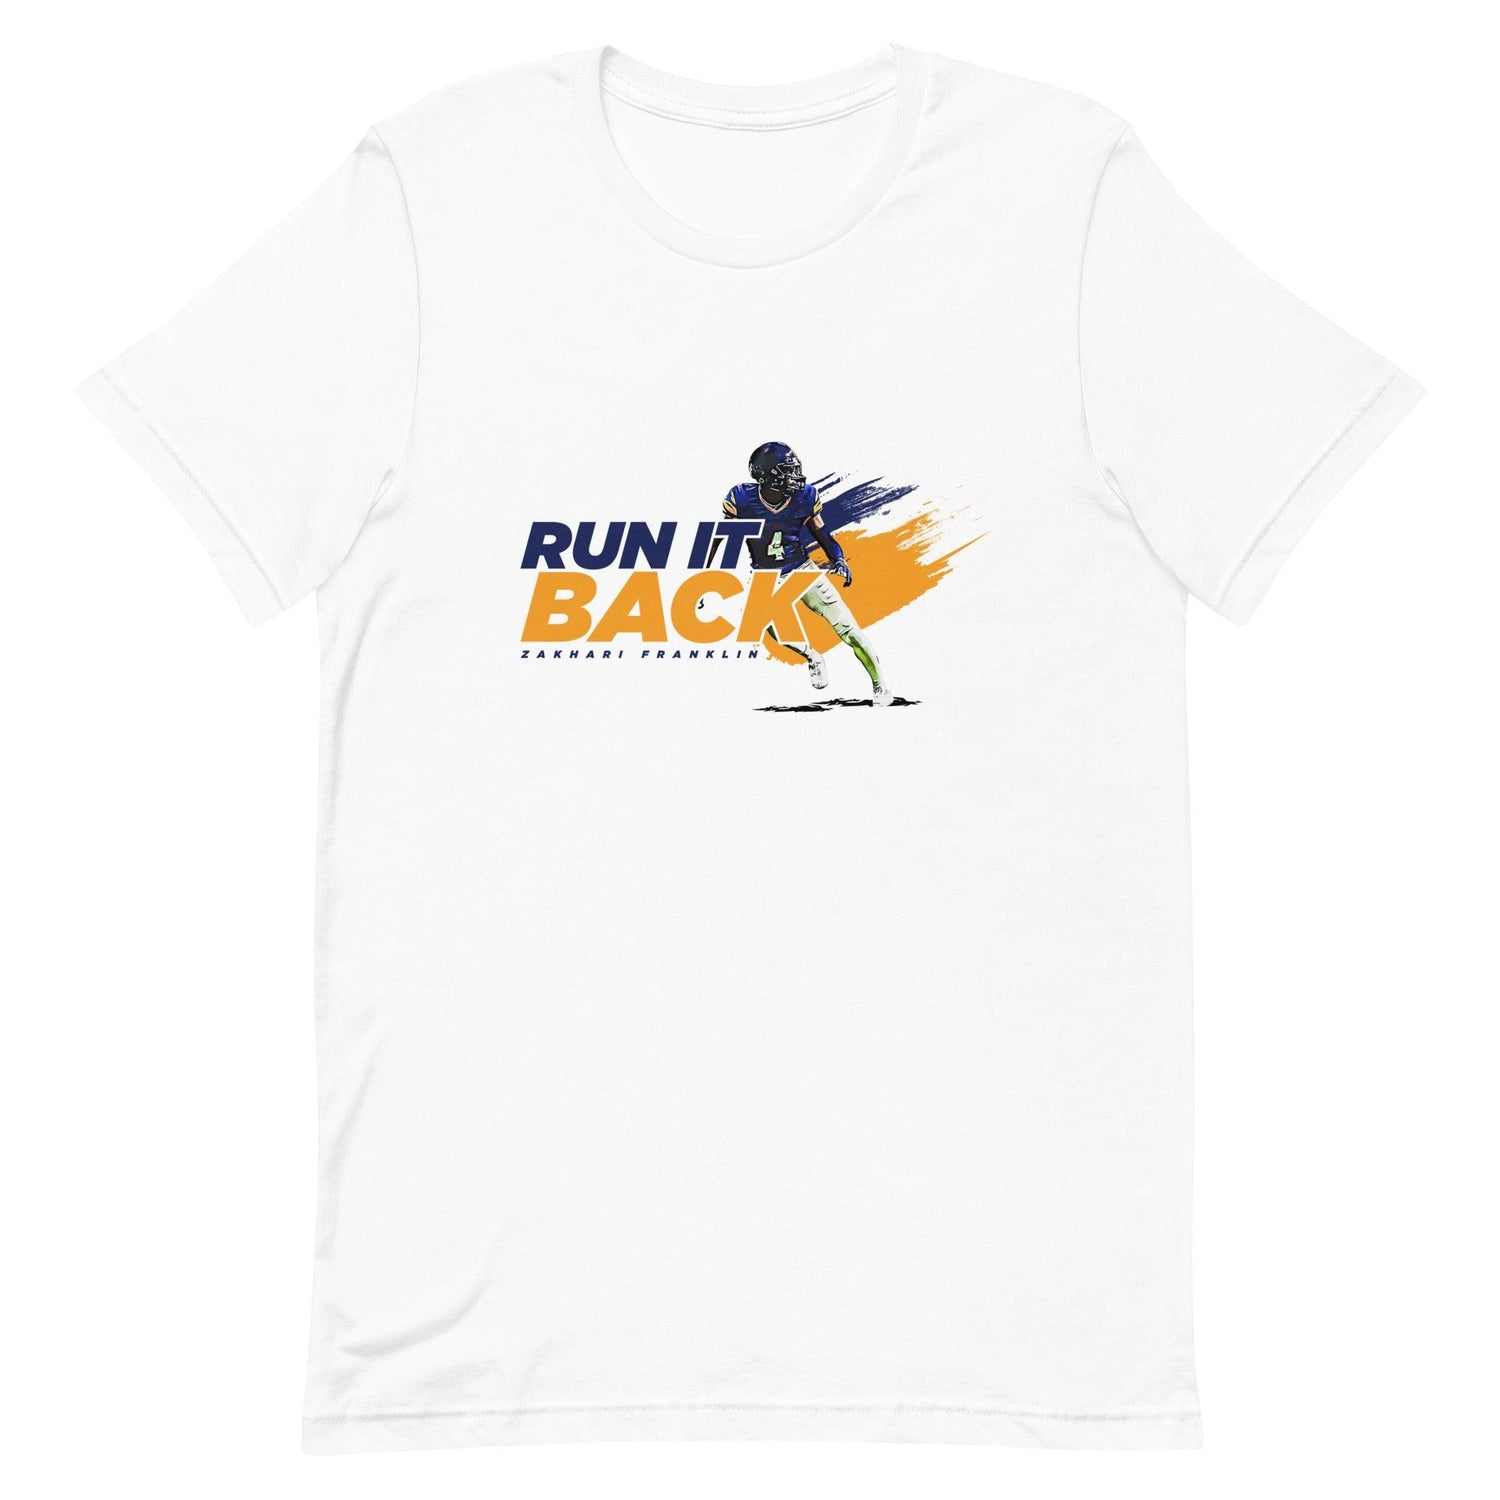 Zakhari Franklin "Run It Back" t-shirt - Fan Arch